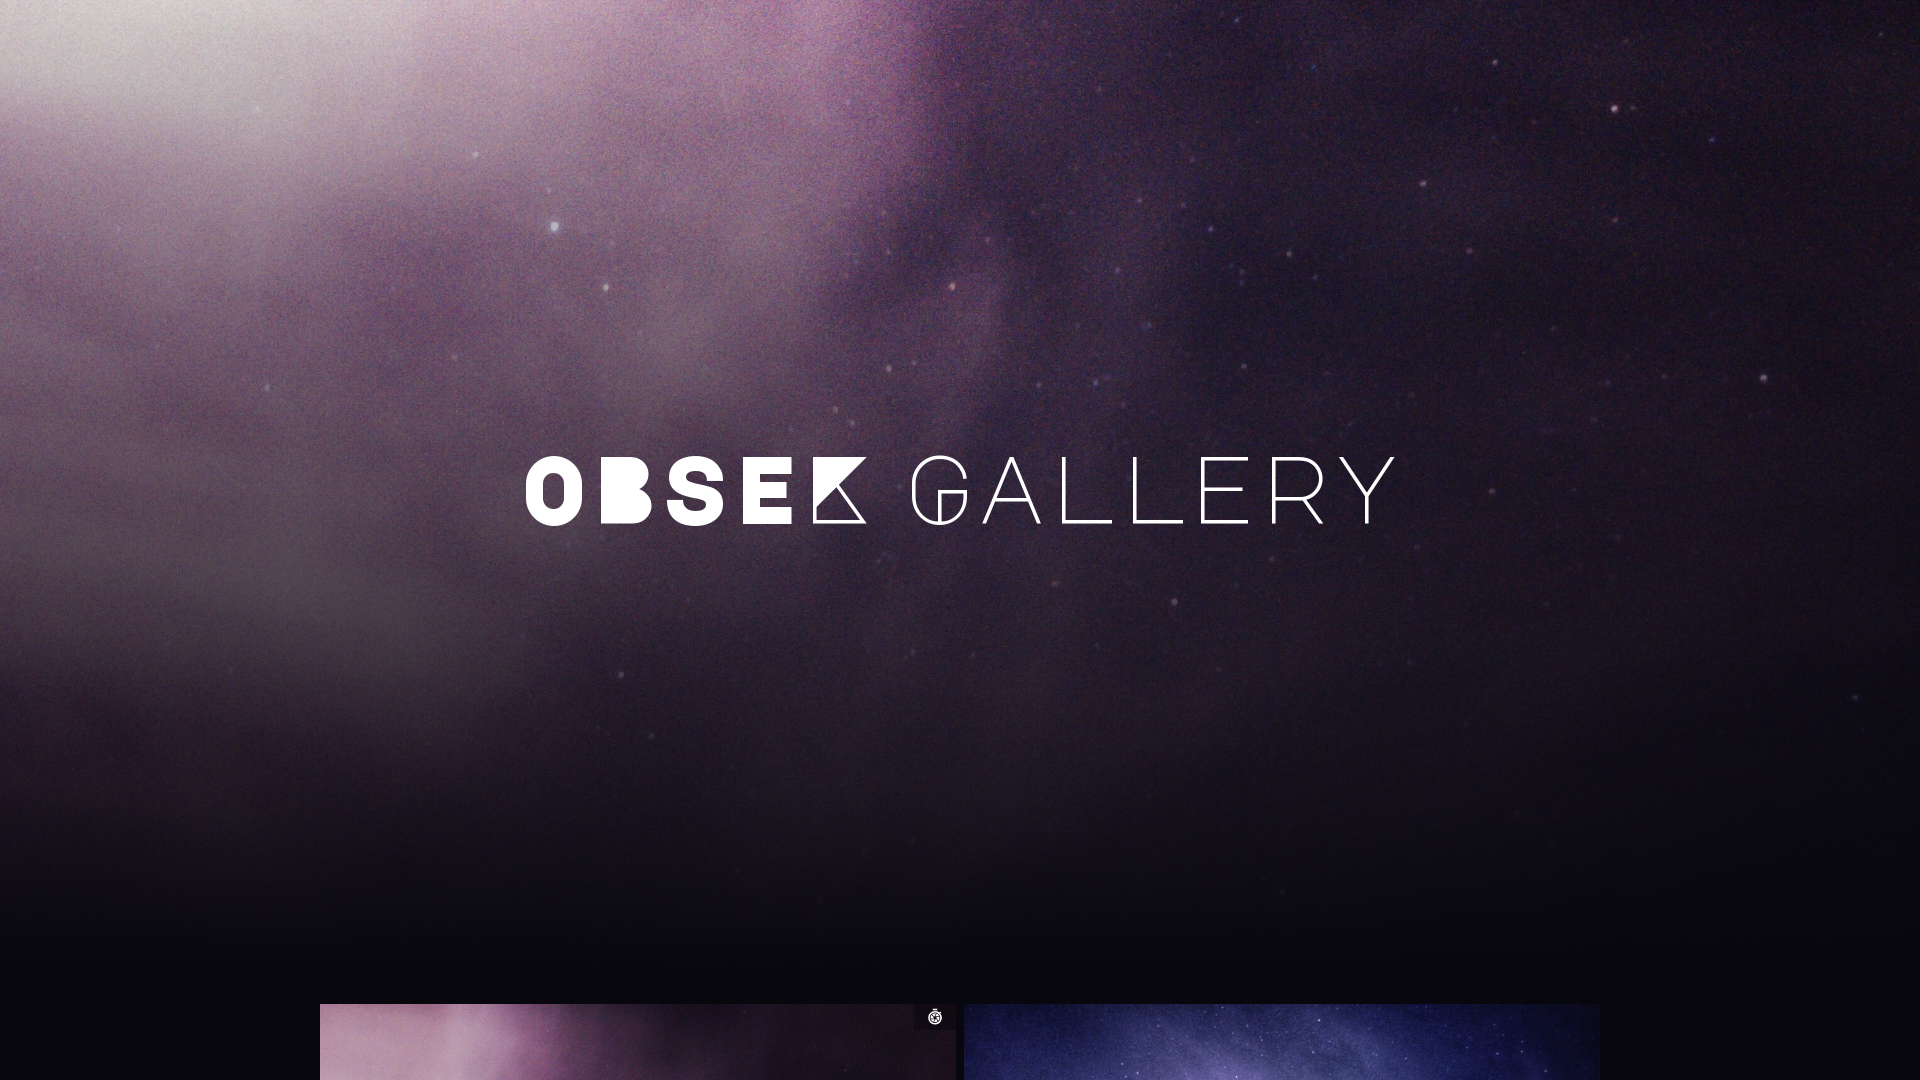 Obsek Gallery